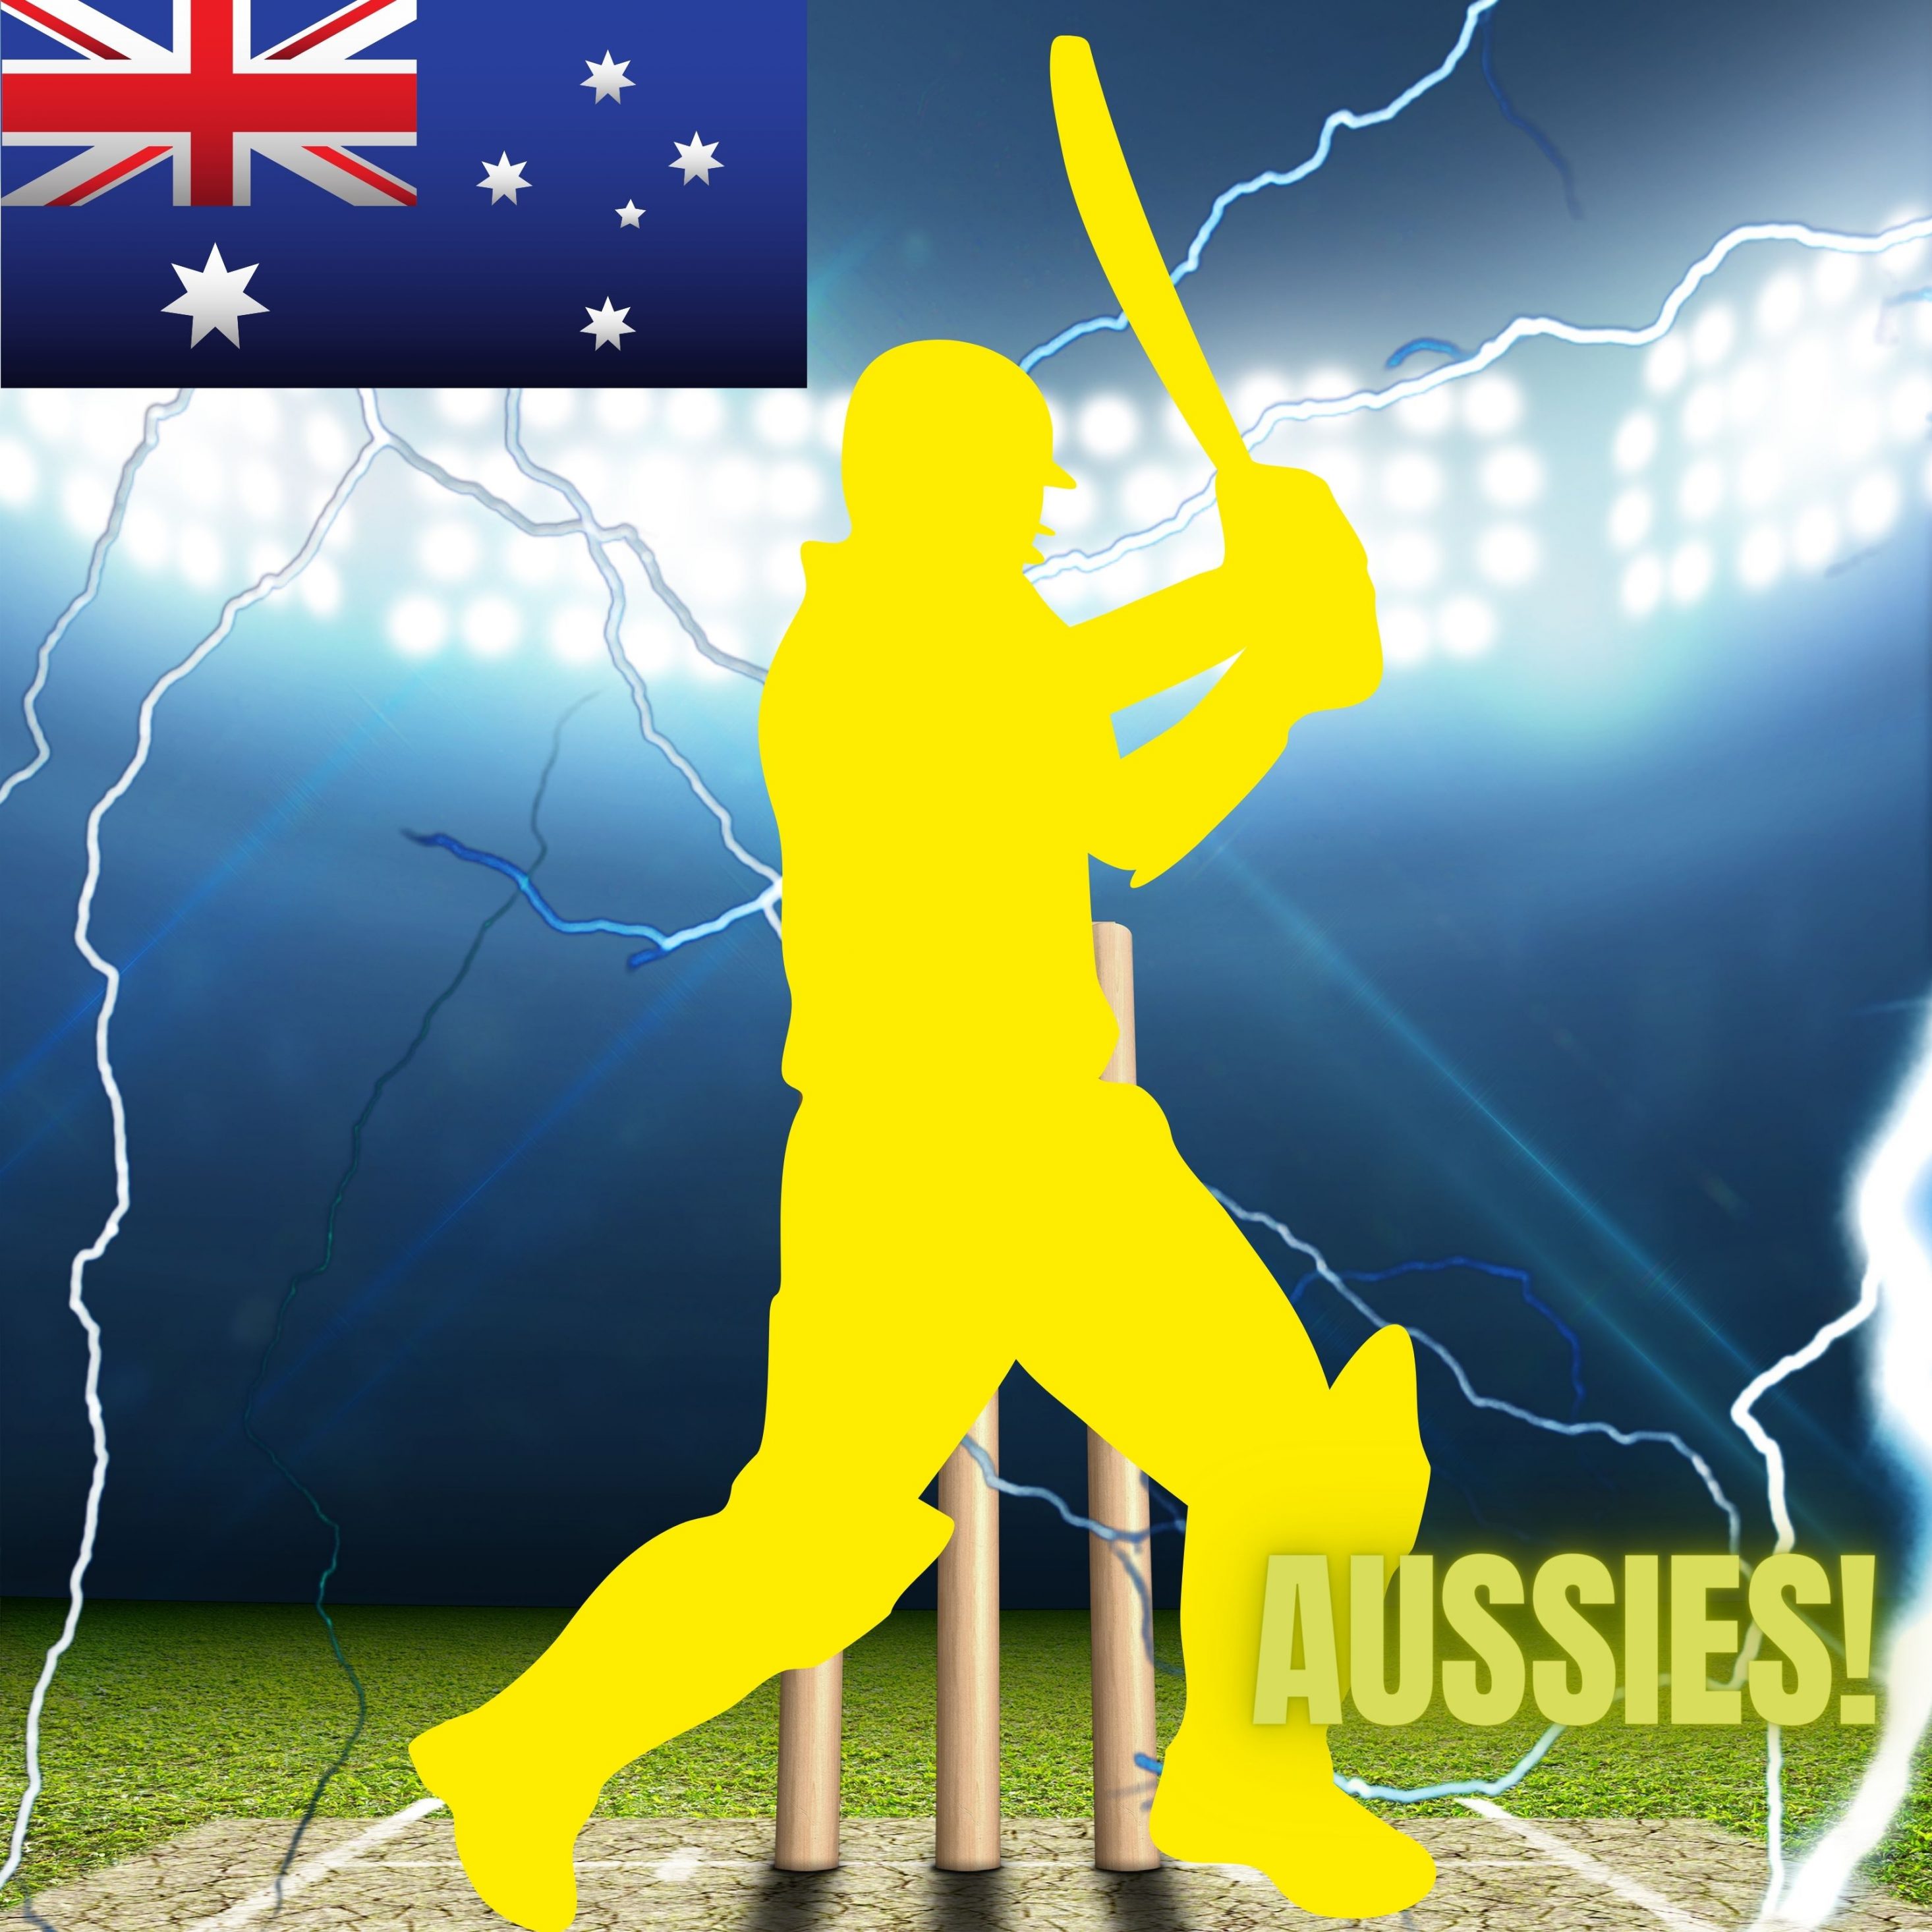 2932x2932 iPad Pro wallpaper 4k Australia Cricket Stadium iPad Wallpaper 2932x2932 pixels resolution